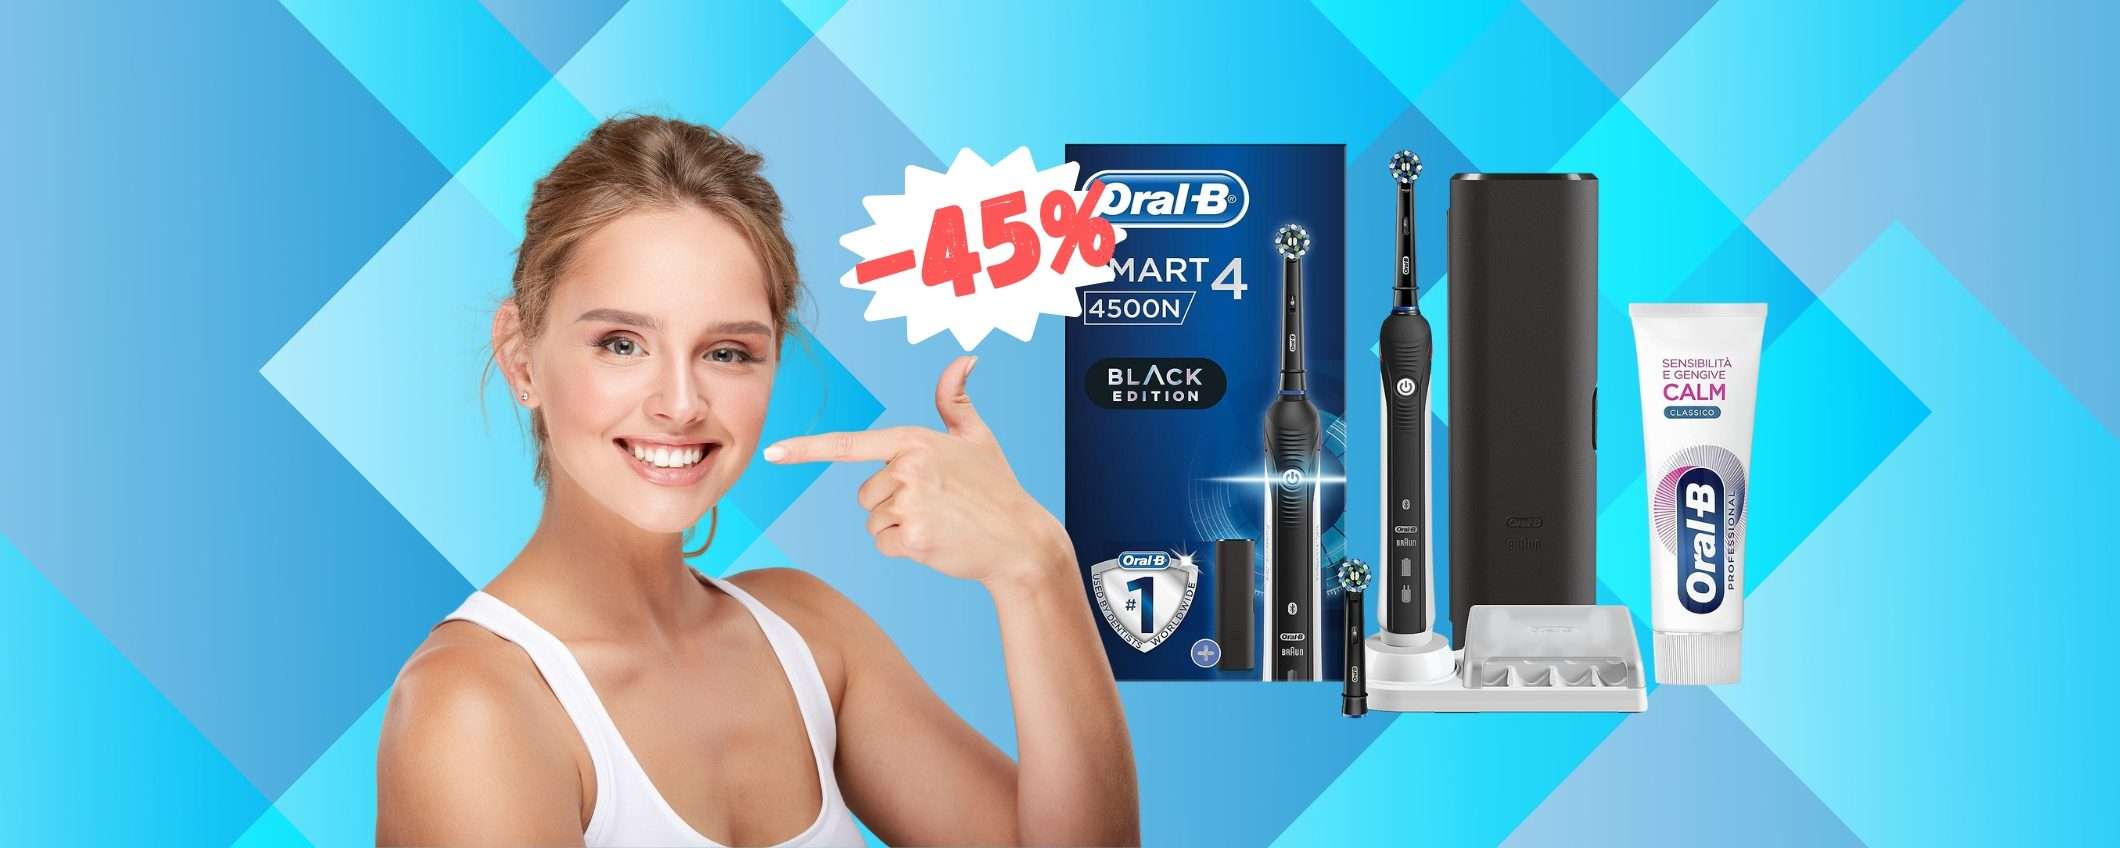 Oral-B Smart 4: 2 testine, dentifricio e custodia da viaggio (-45%)